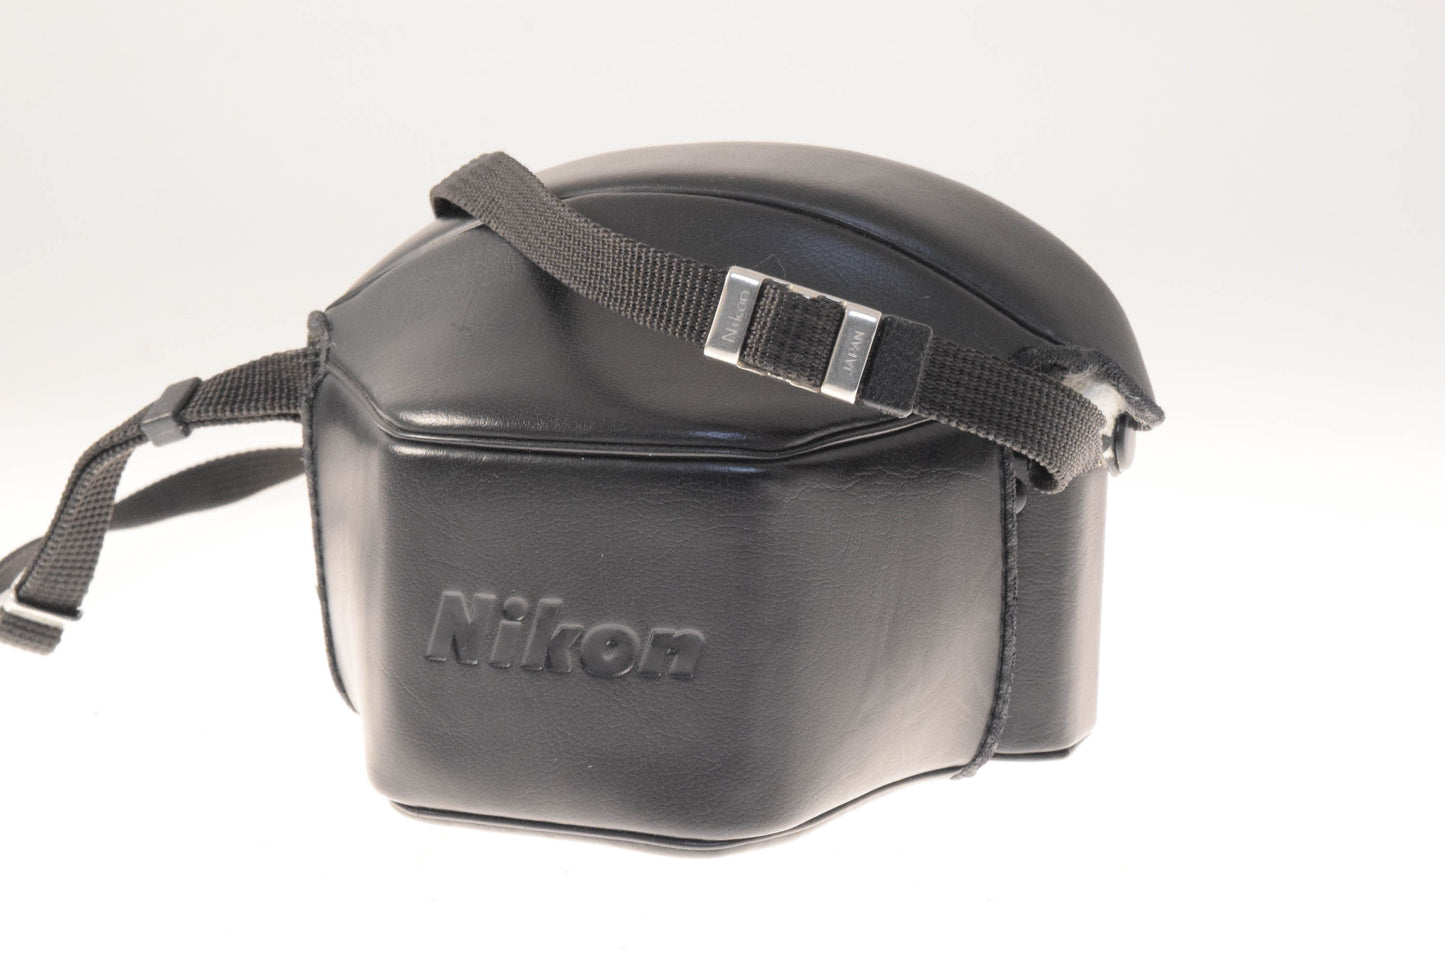 Nikon EM + 50mm f1.8 Series E